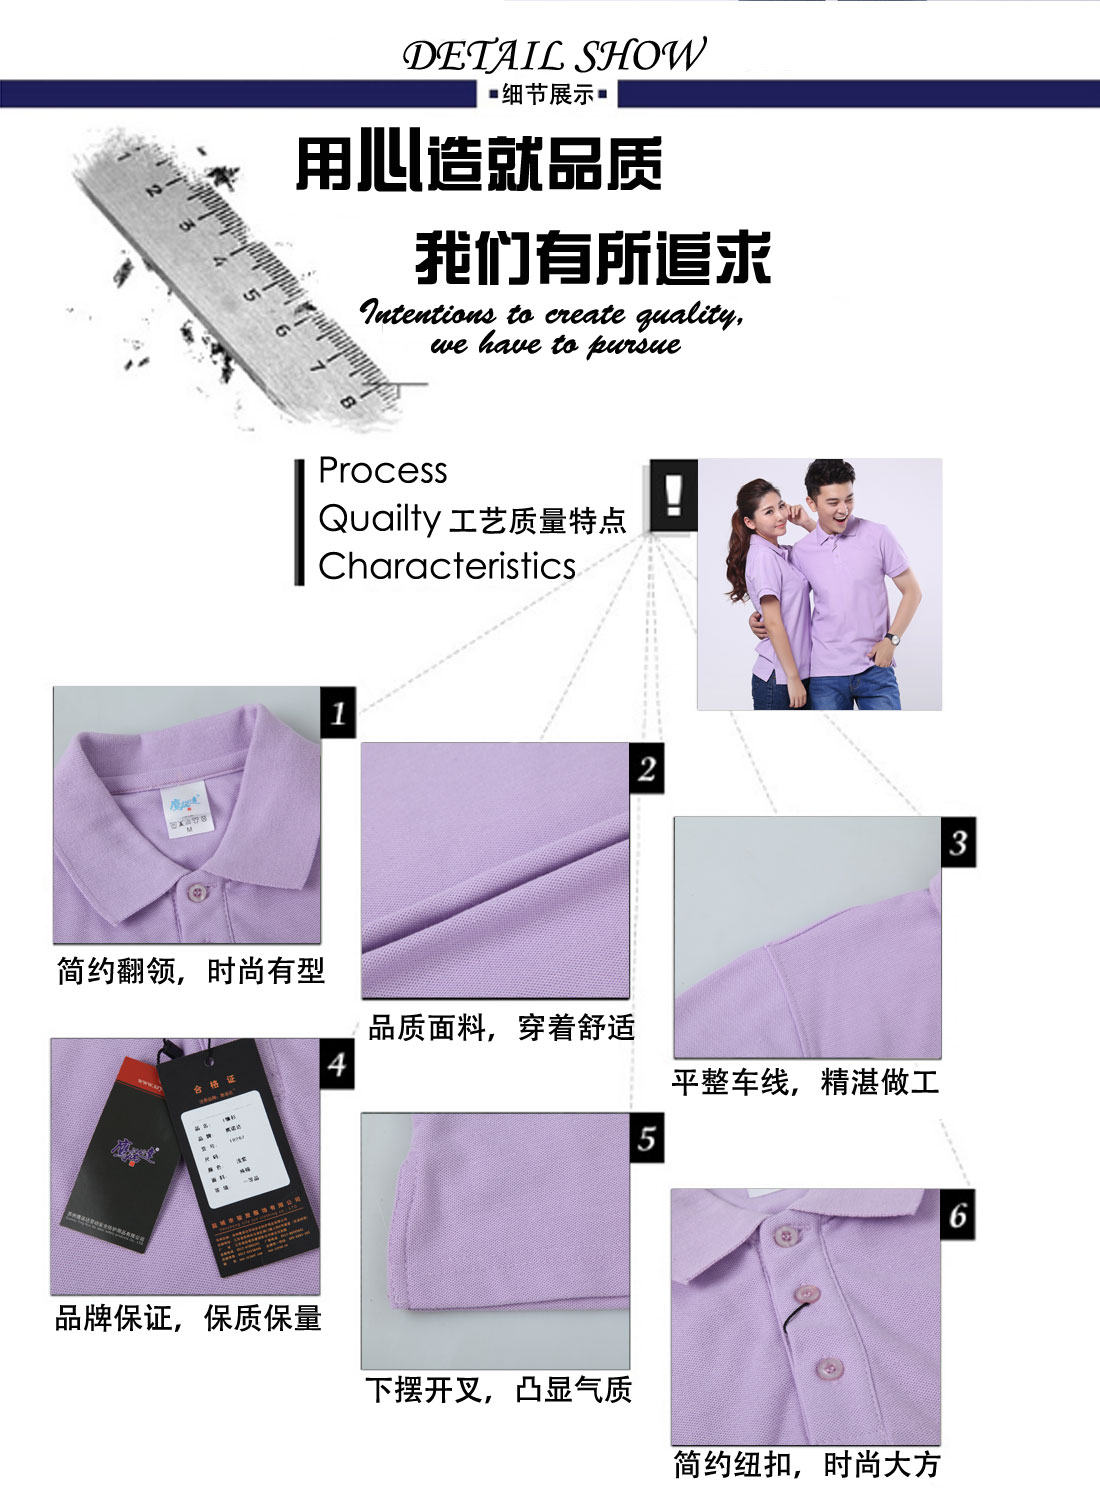 鹰诺达设计 潮流短袖T恤工作服 浅紫色t恤衫工作服细节展示 